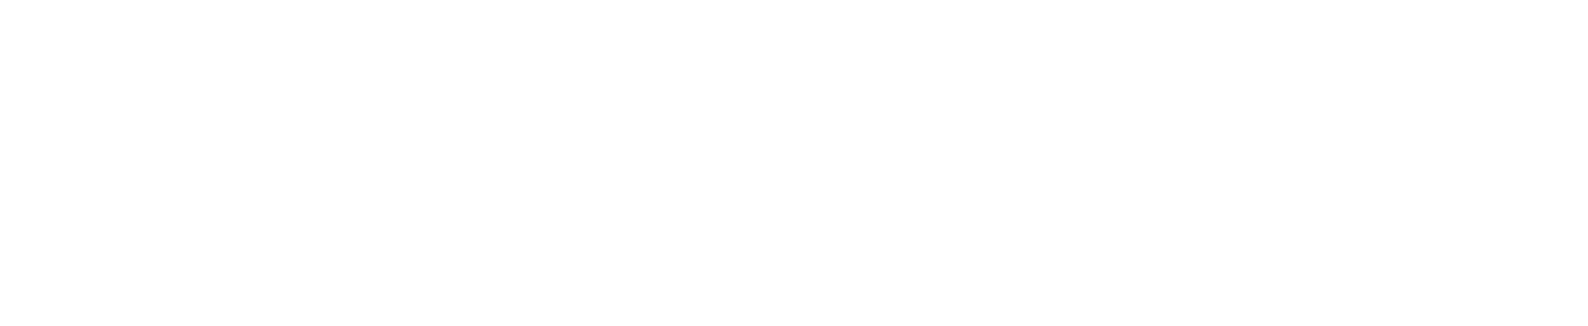 2020 ファンドビジネスへ Future Food Fundへの参画